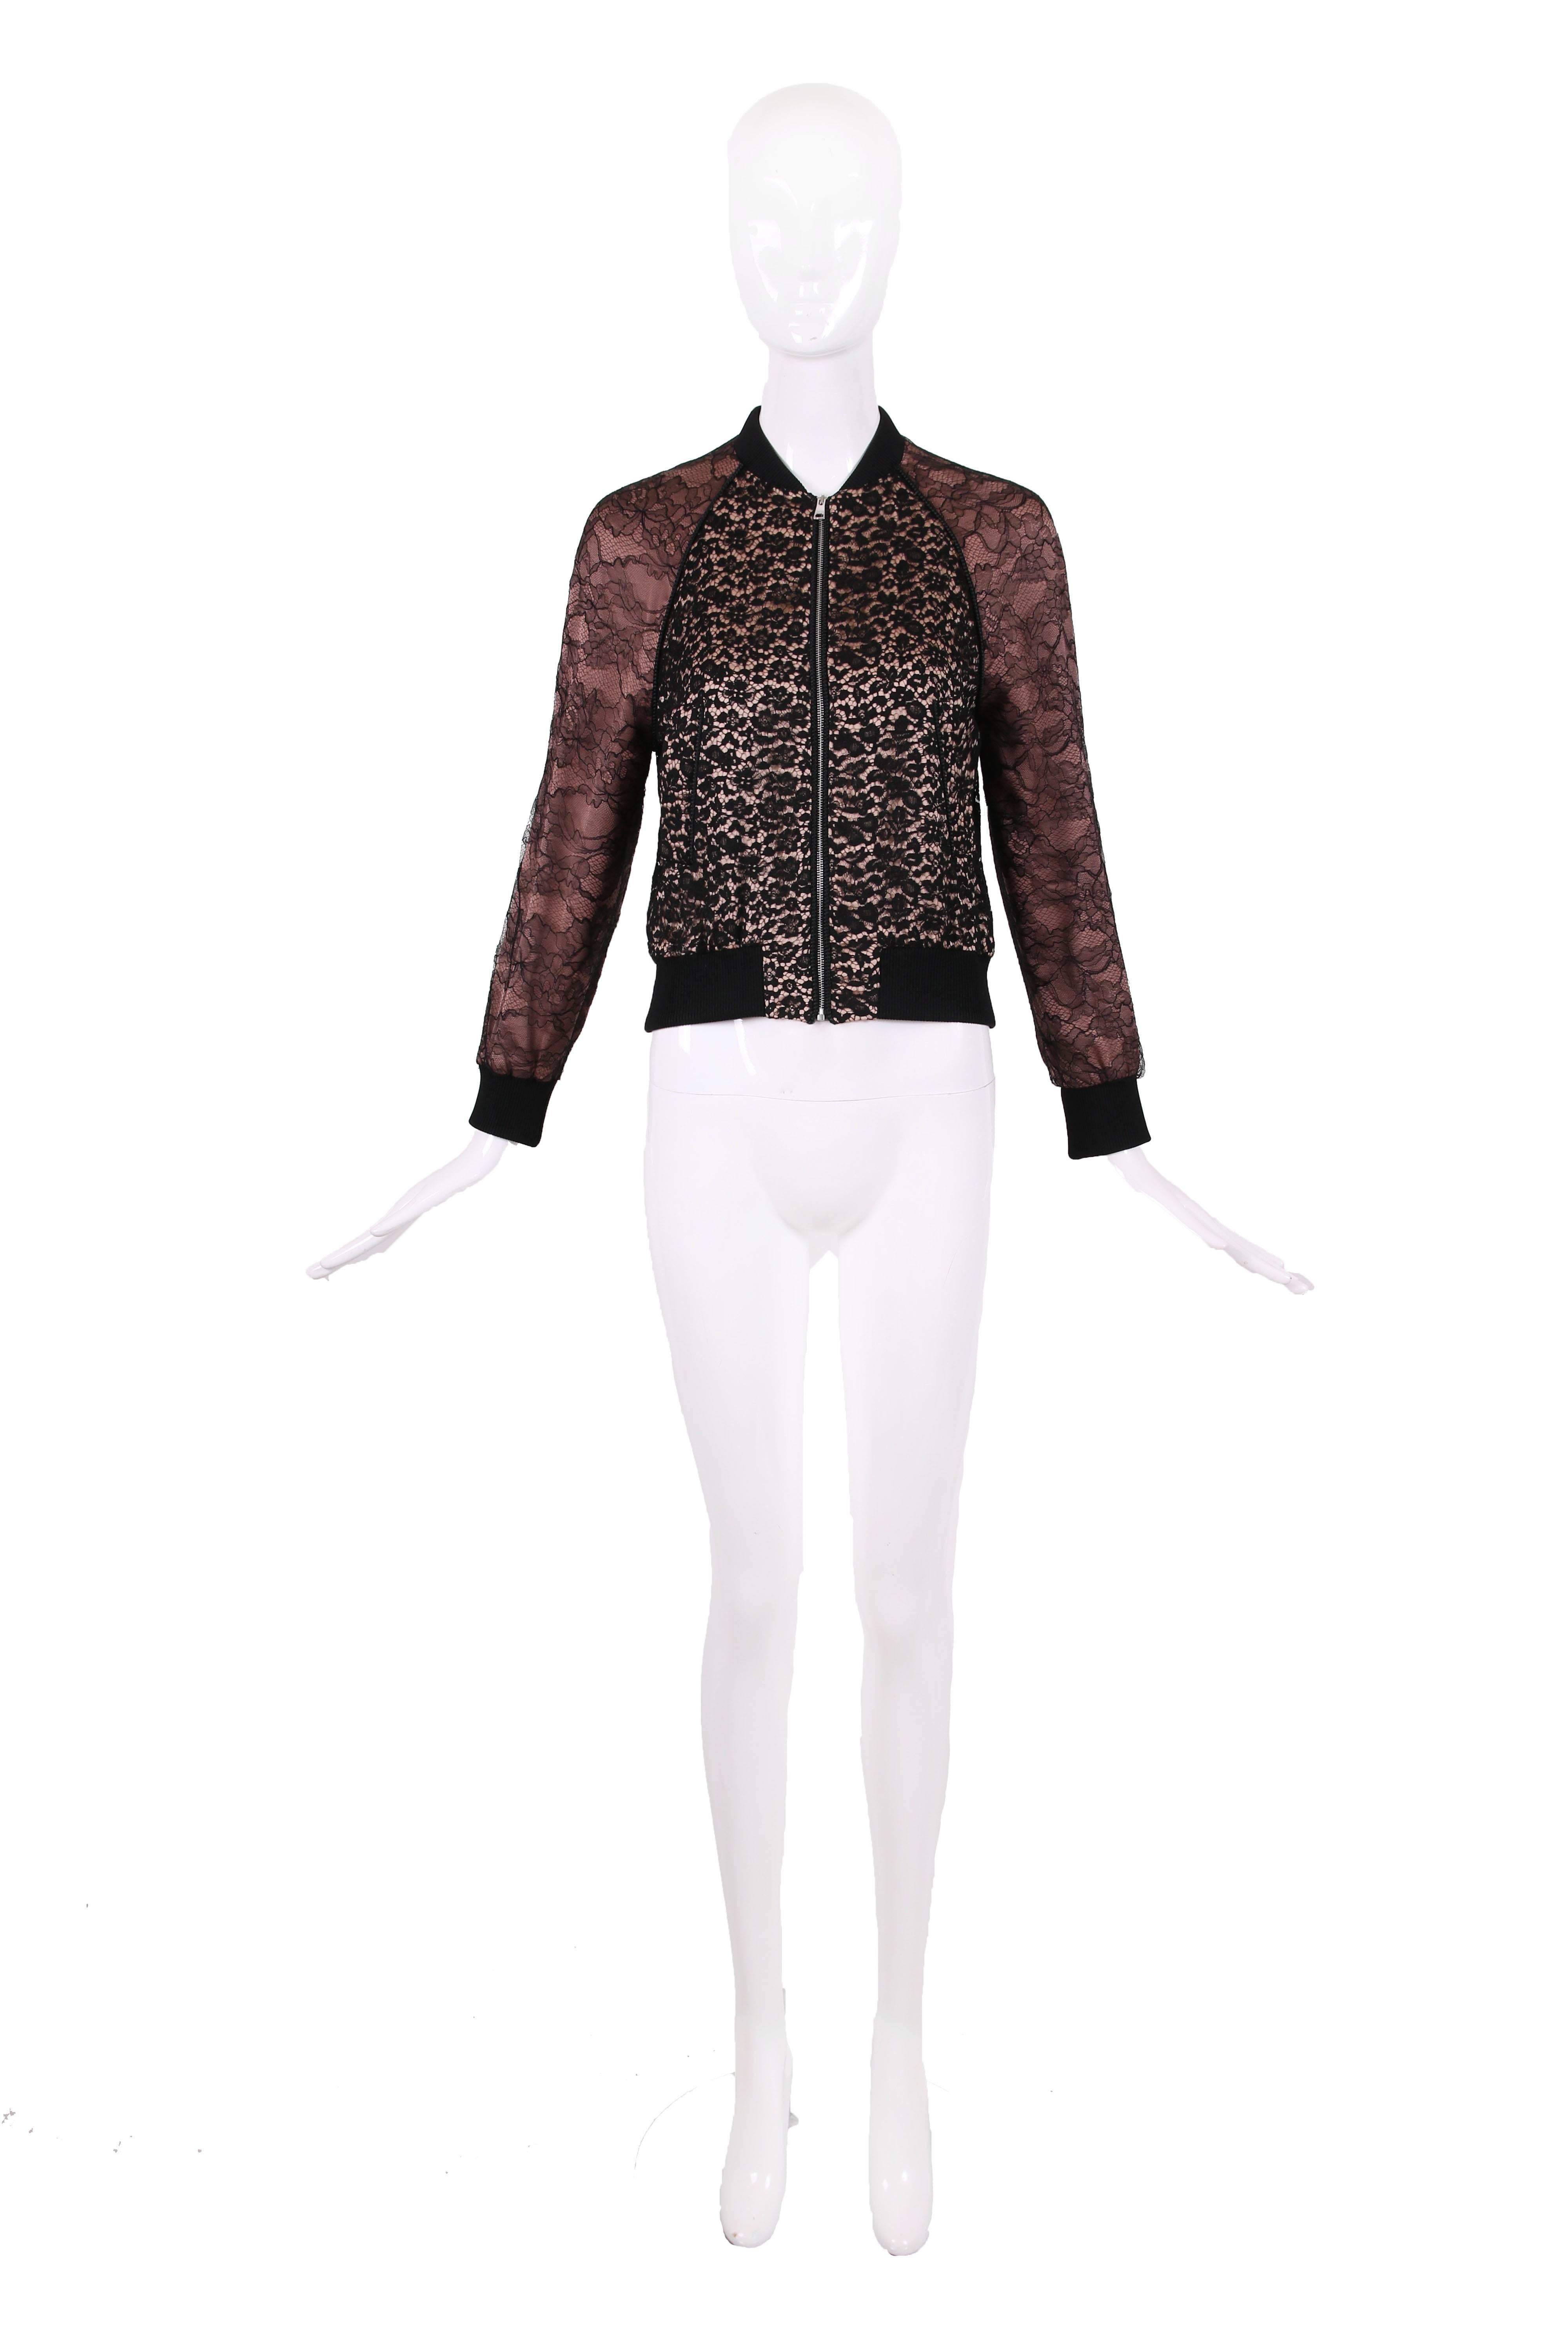 2016 Resort Collection Gucci staubige Rose mit schwarzer Spitze Overlay Bomberjacke. Die Jacke hat einen Stehkragen, zwei Leistentaschen an der Taille, Rippstrickbesatz an Taille, Kragen und Manschetten und einen silberfarbenen Metallreißverschluss